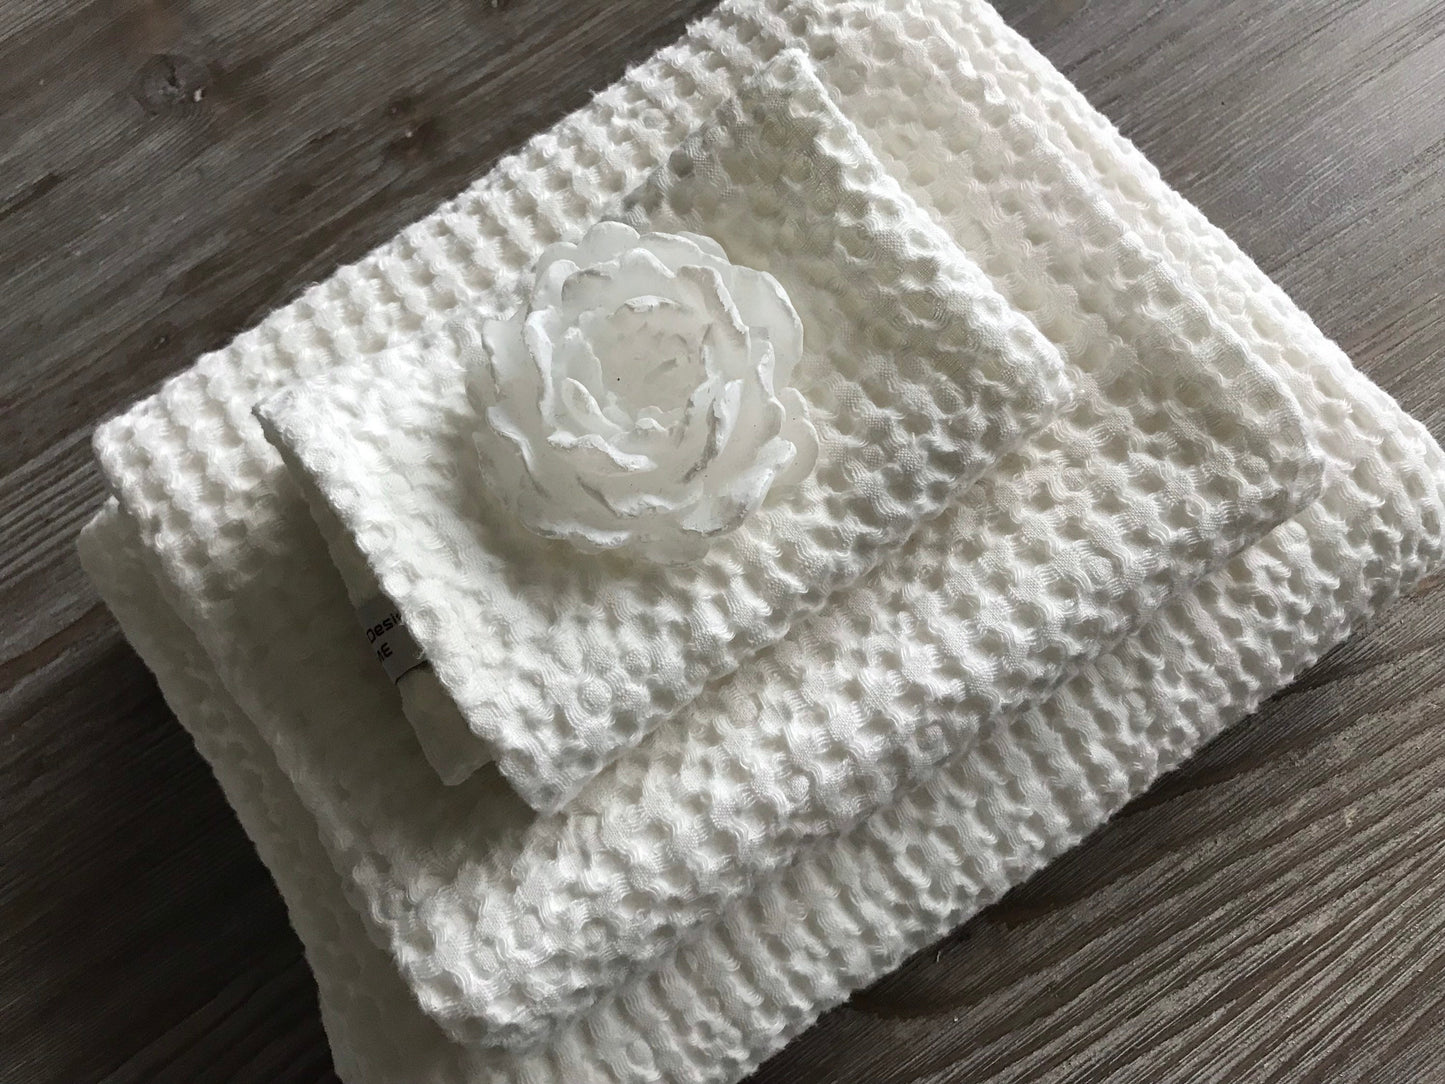 Bath waffle weave towel. Linen cotton blend. White.